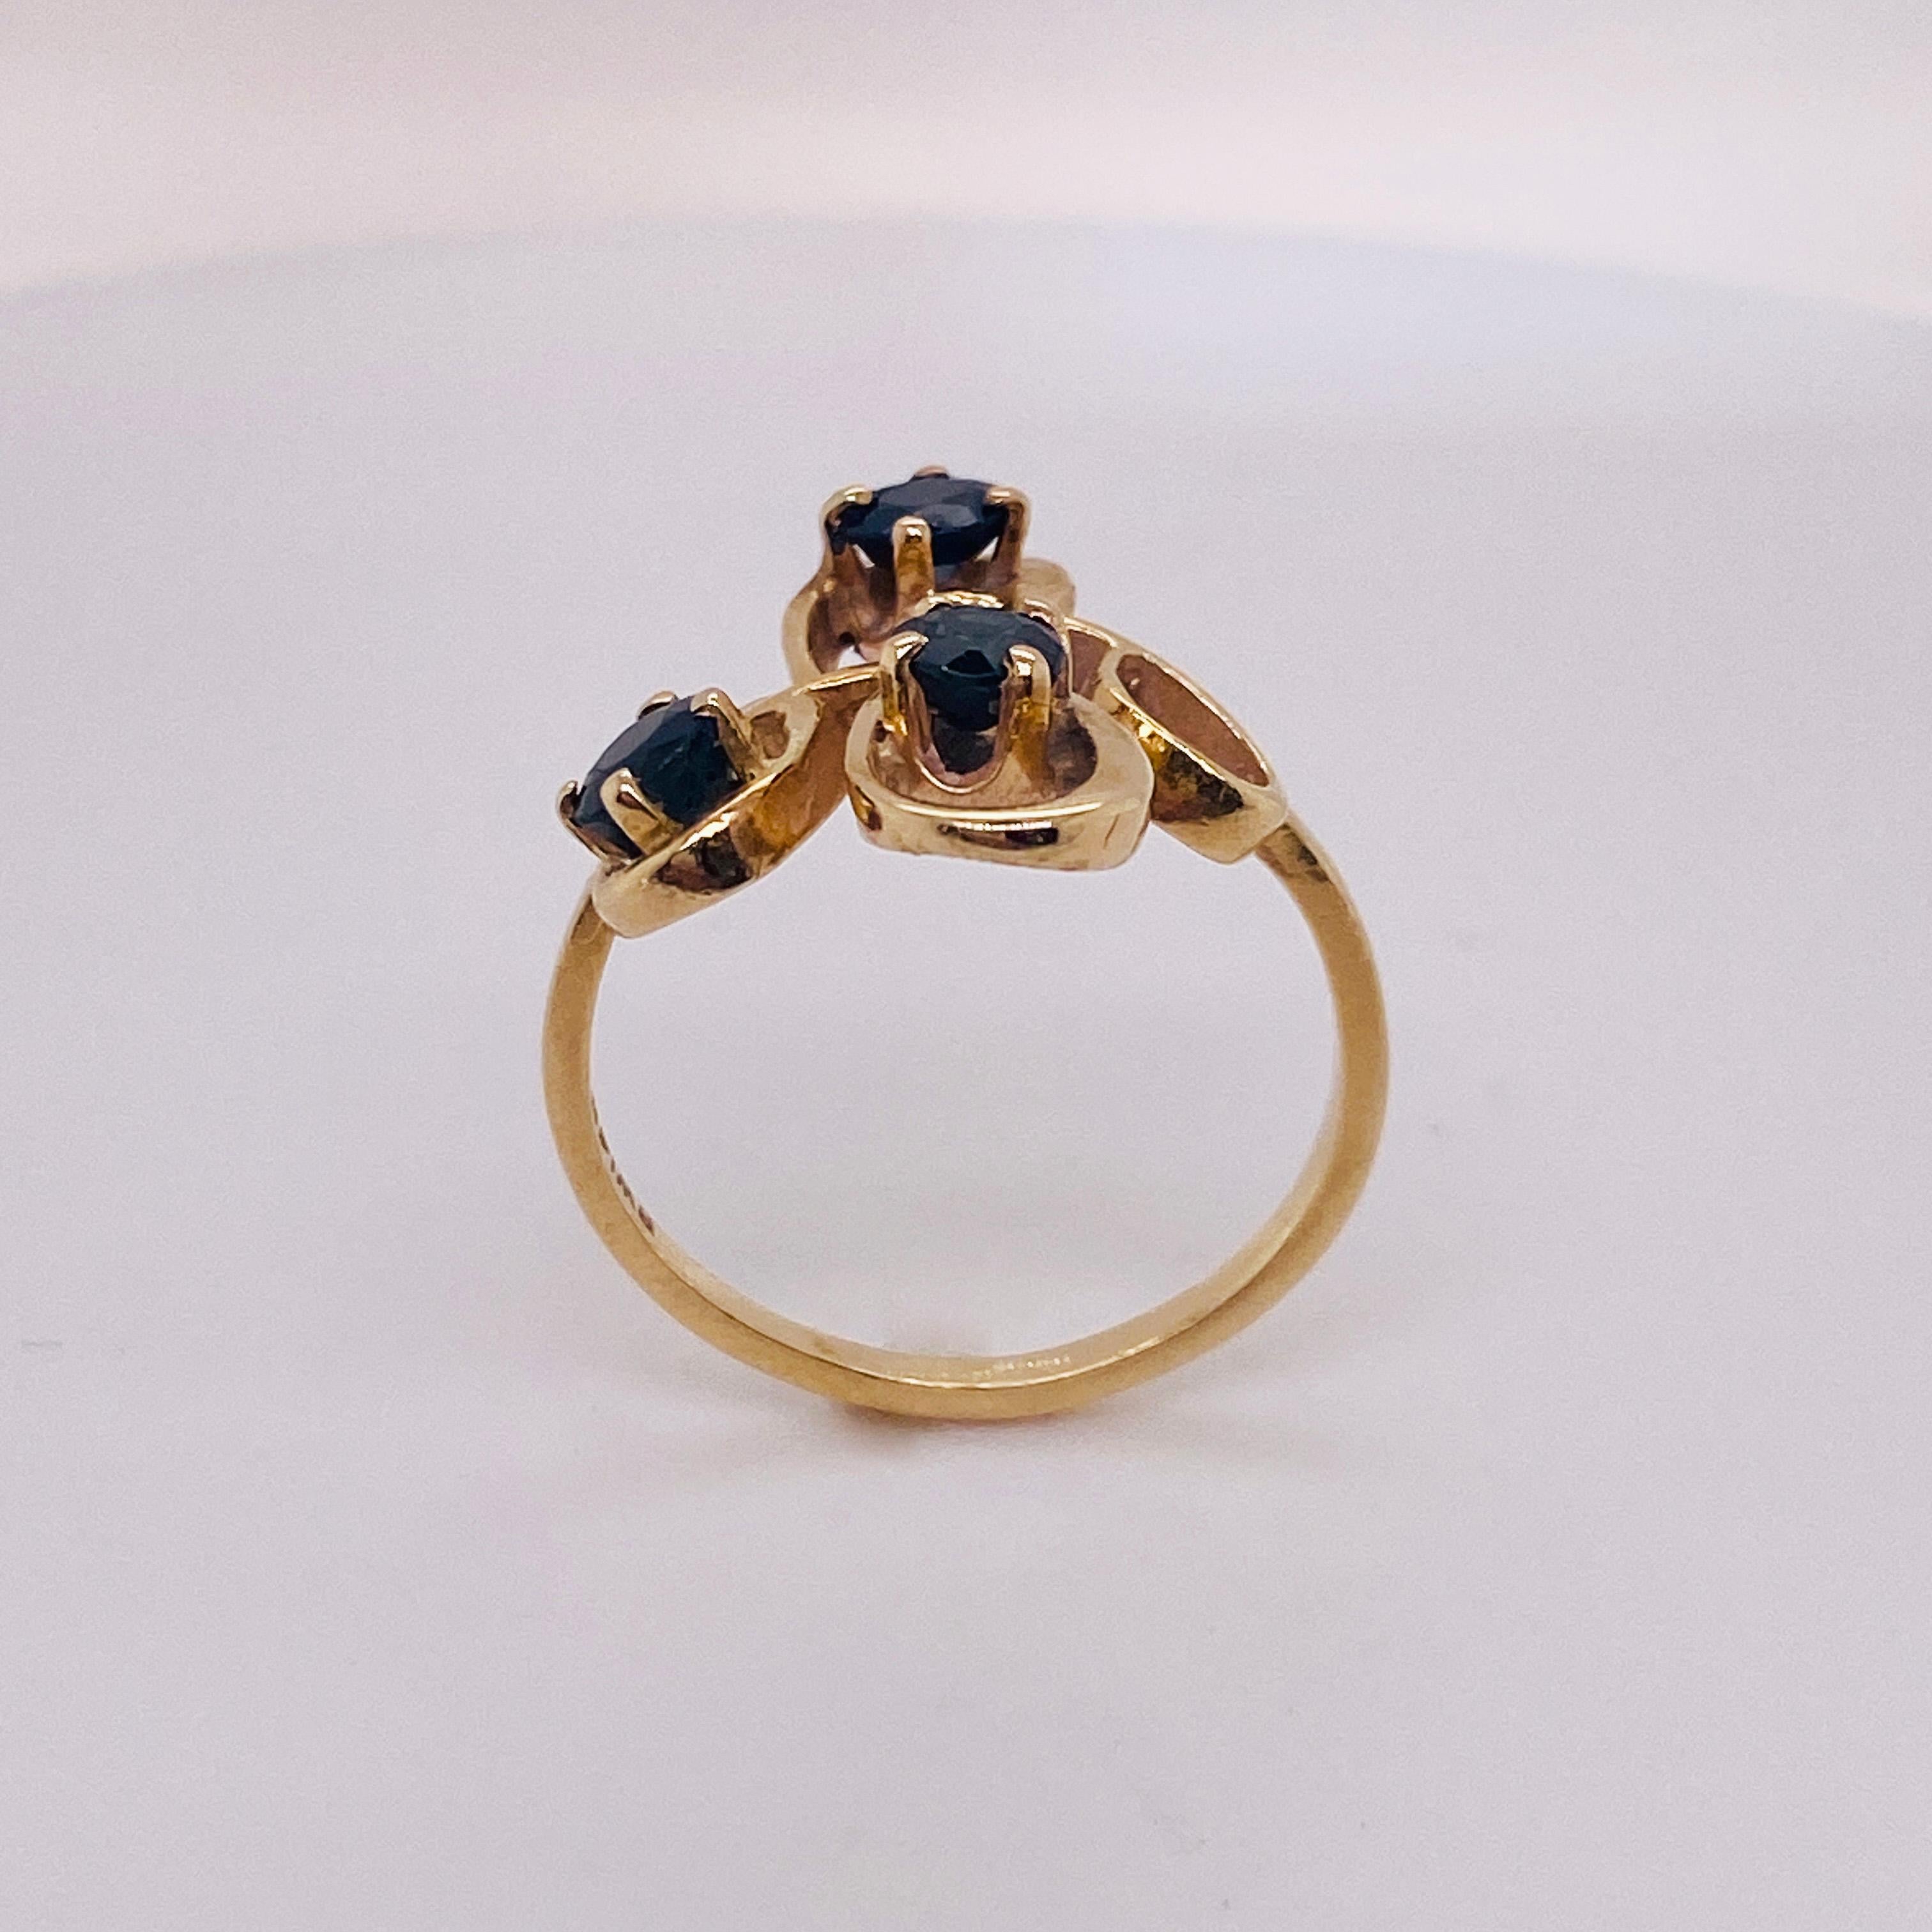 zora's sapphire ring